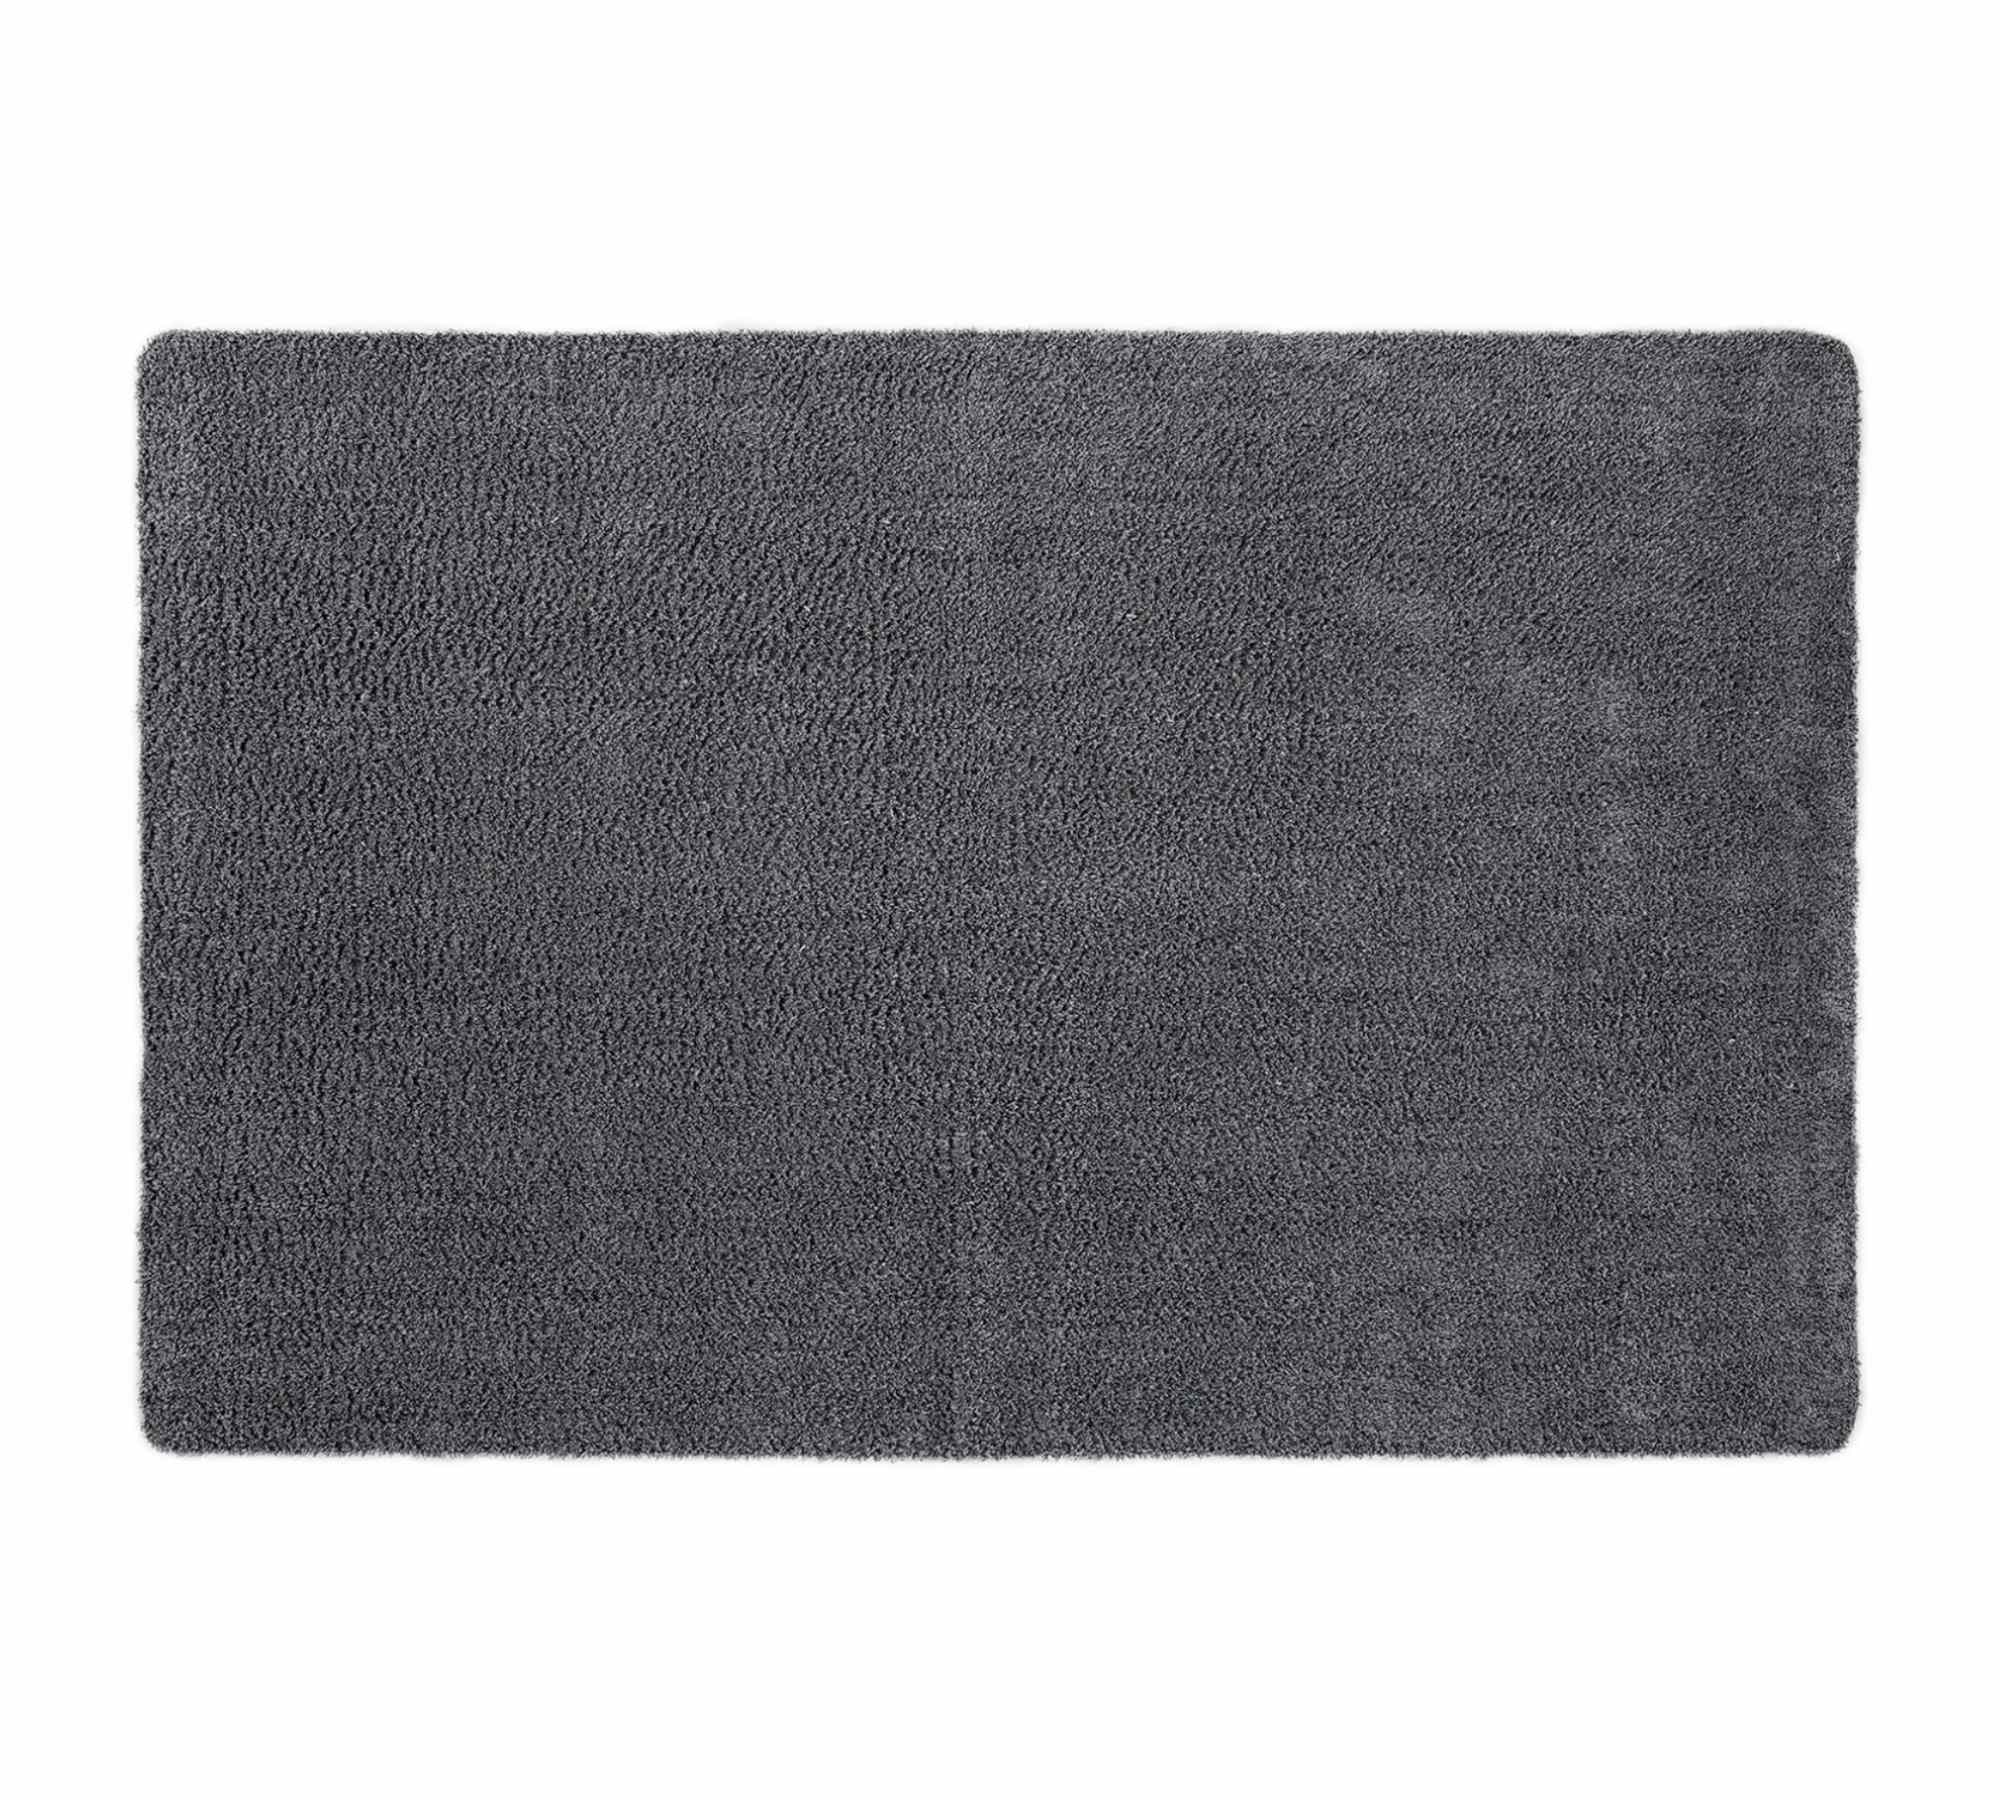 Fußmatte Baumwolle Grau 120x180cm 0